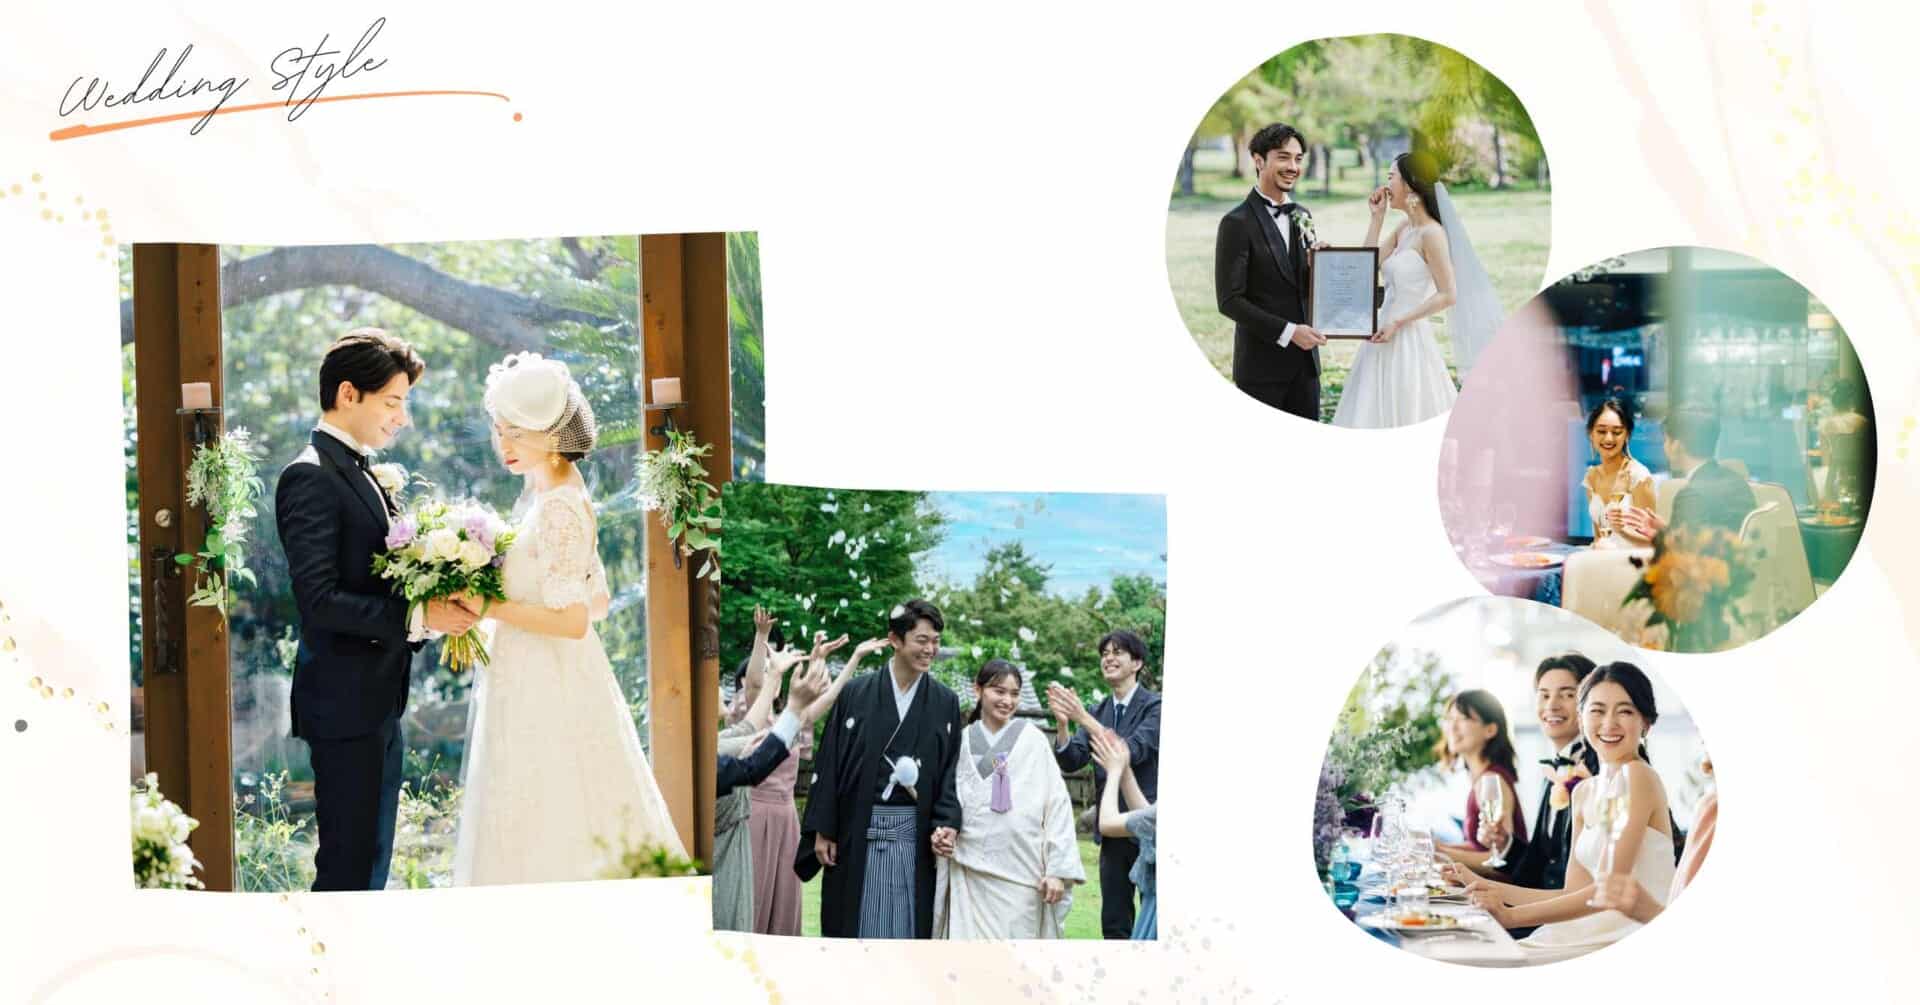 参加費無料でドレス試着や式場探しができる大阪のウエディングイベント「花嫁ドレスフェスタ」では自分に合う結婚式場を提案してもらえる